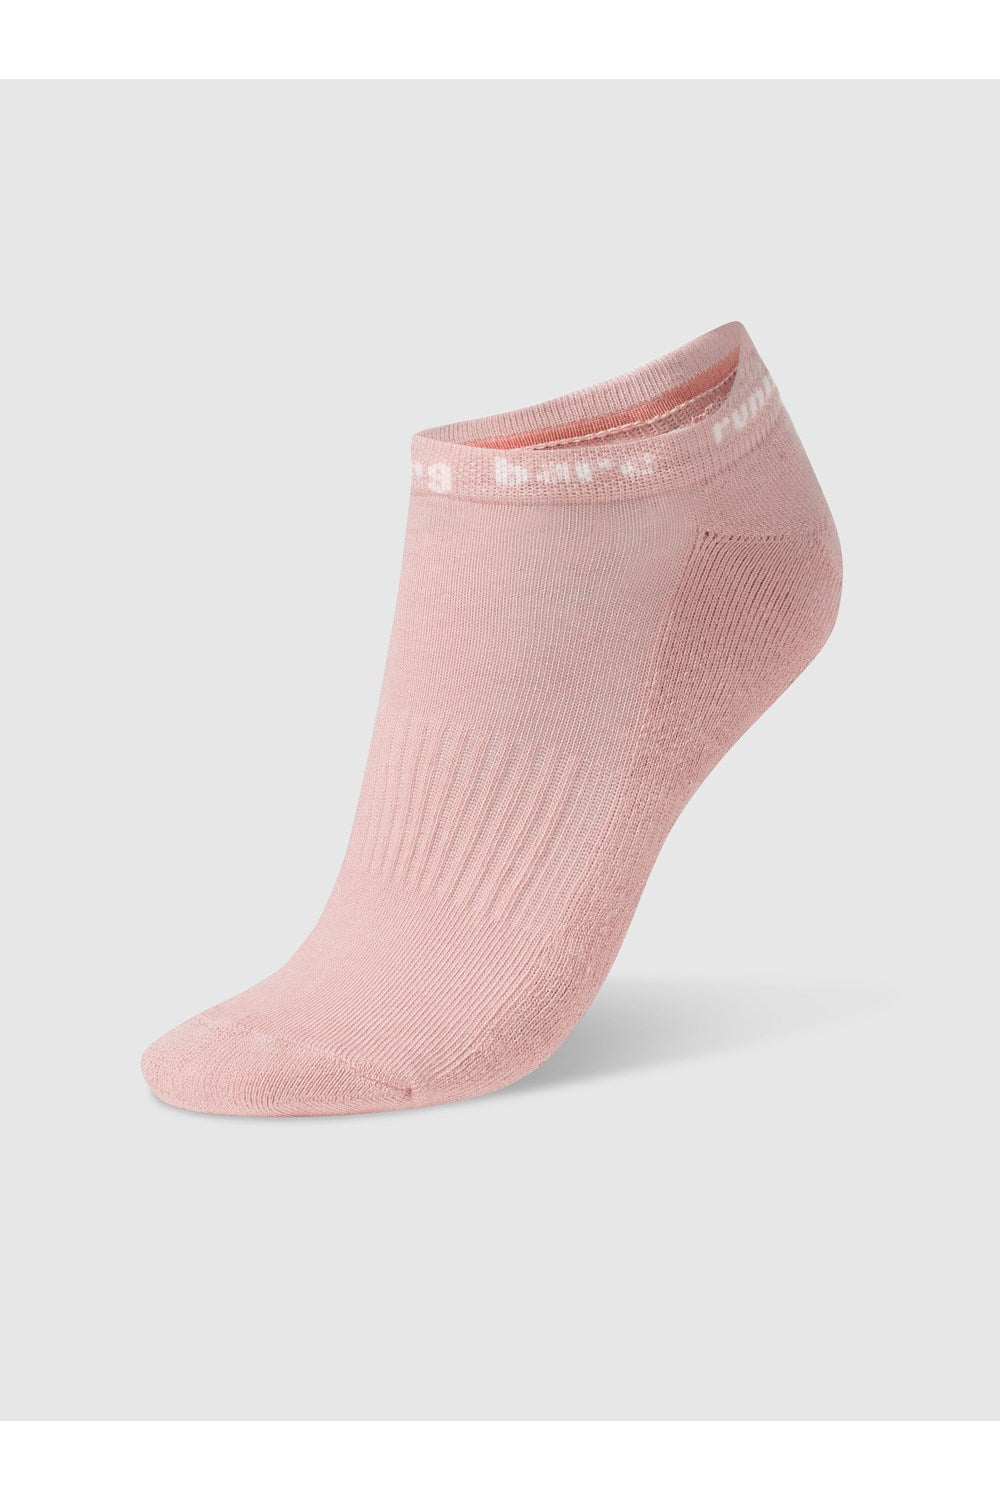 RUNNING BARE Rb Blossom Cotton Soft Sock SOCK 